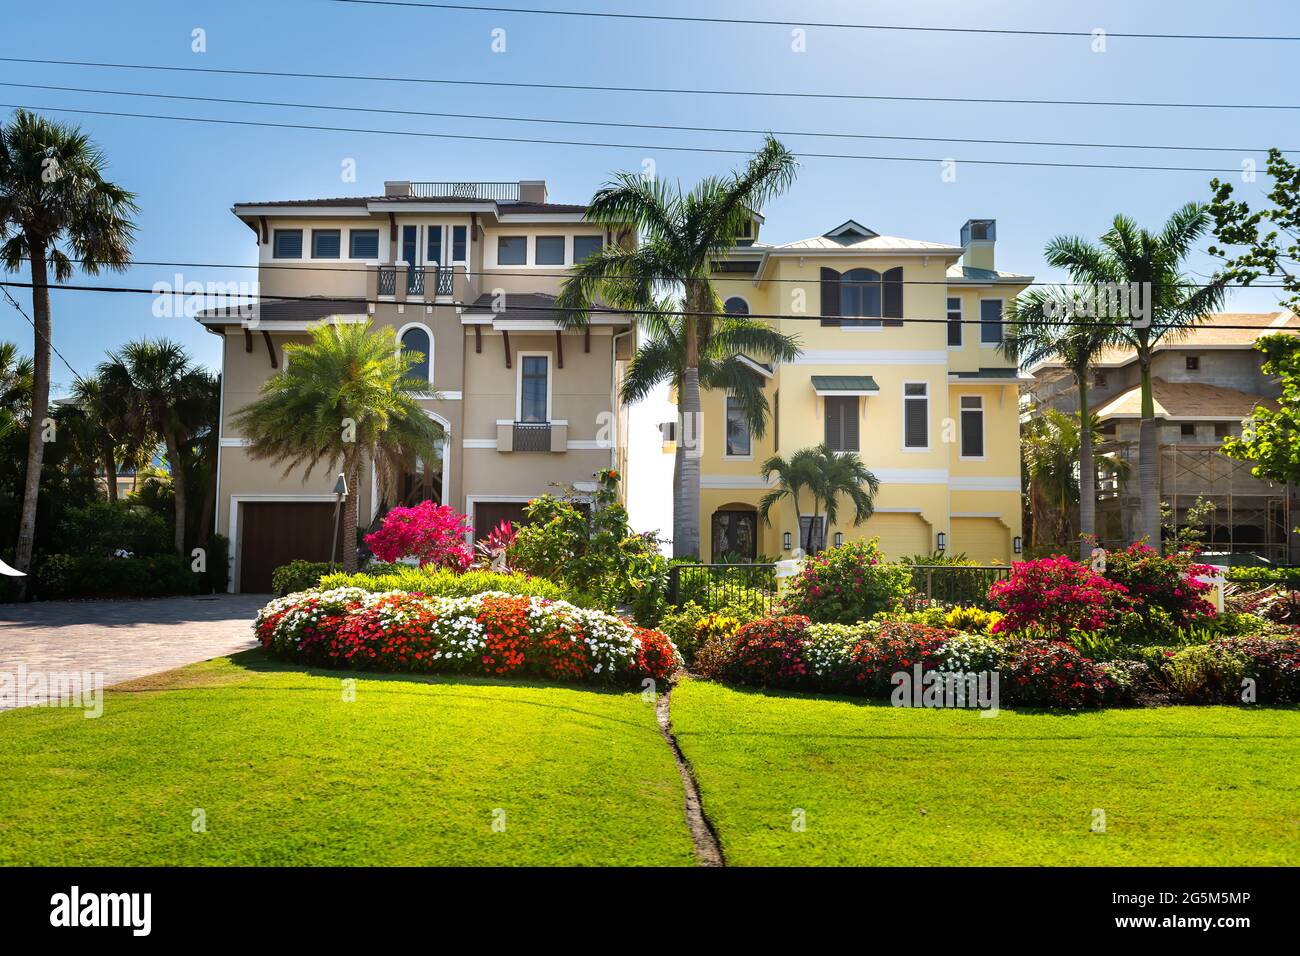 Bonita Springs, il golfo della Florida della costa del messico con giardini e ville colorate di lusso ospita edifici di architettura moderna fronte mare e viale Foto Stock